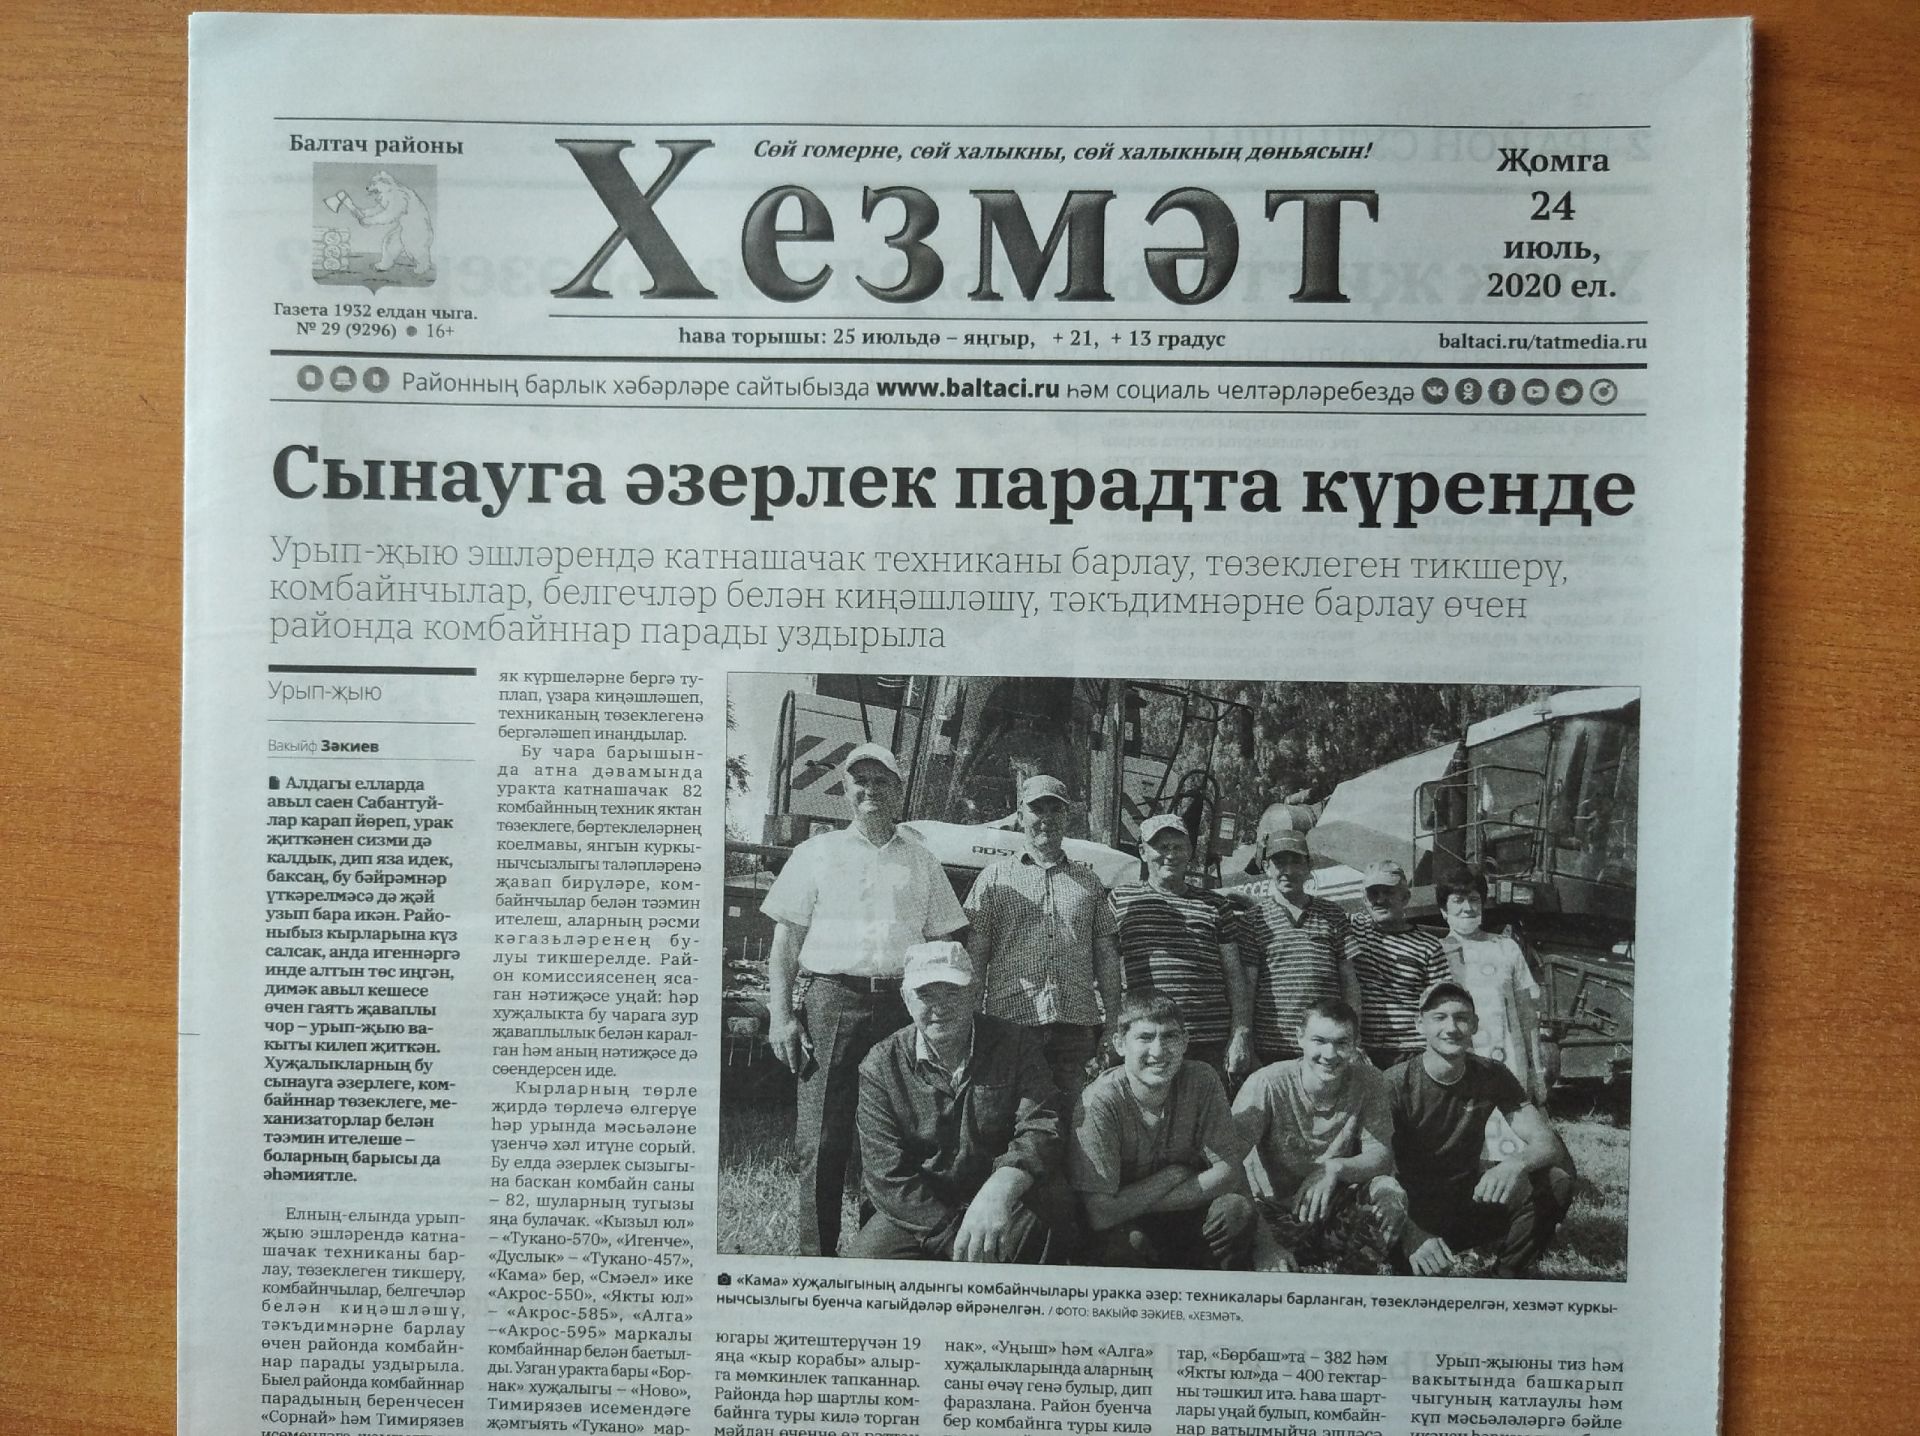 Газетаның 29нчы санында (24 июль, 2020 ел) чыгарылган белдерүләр һәм рекламалар